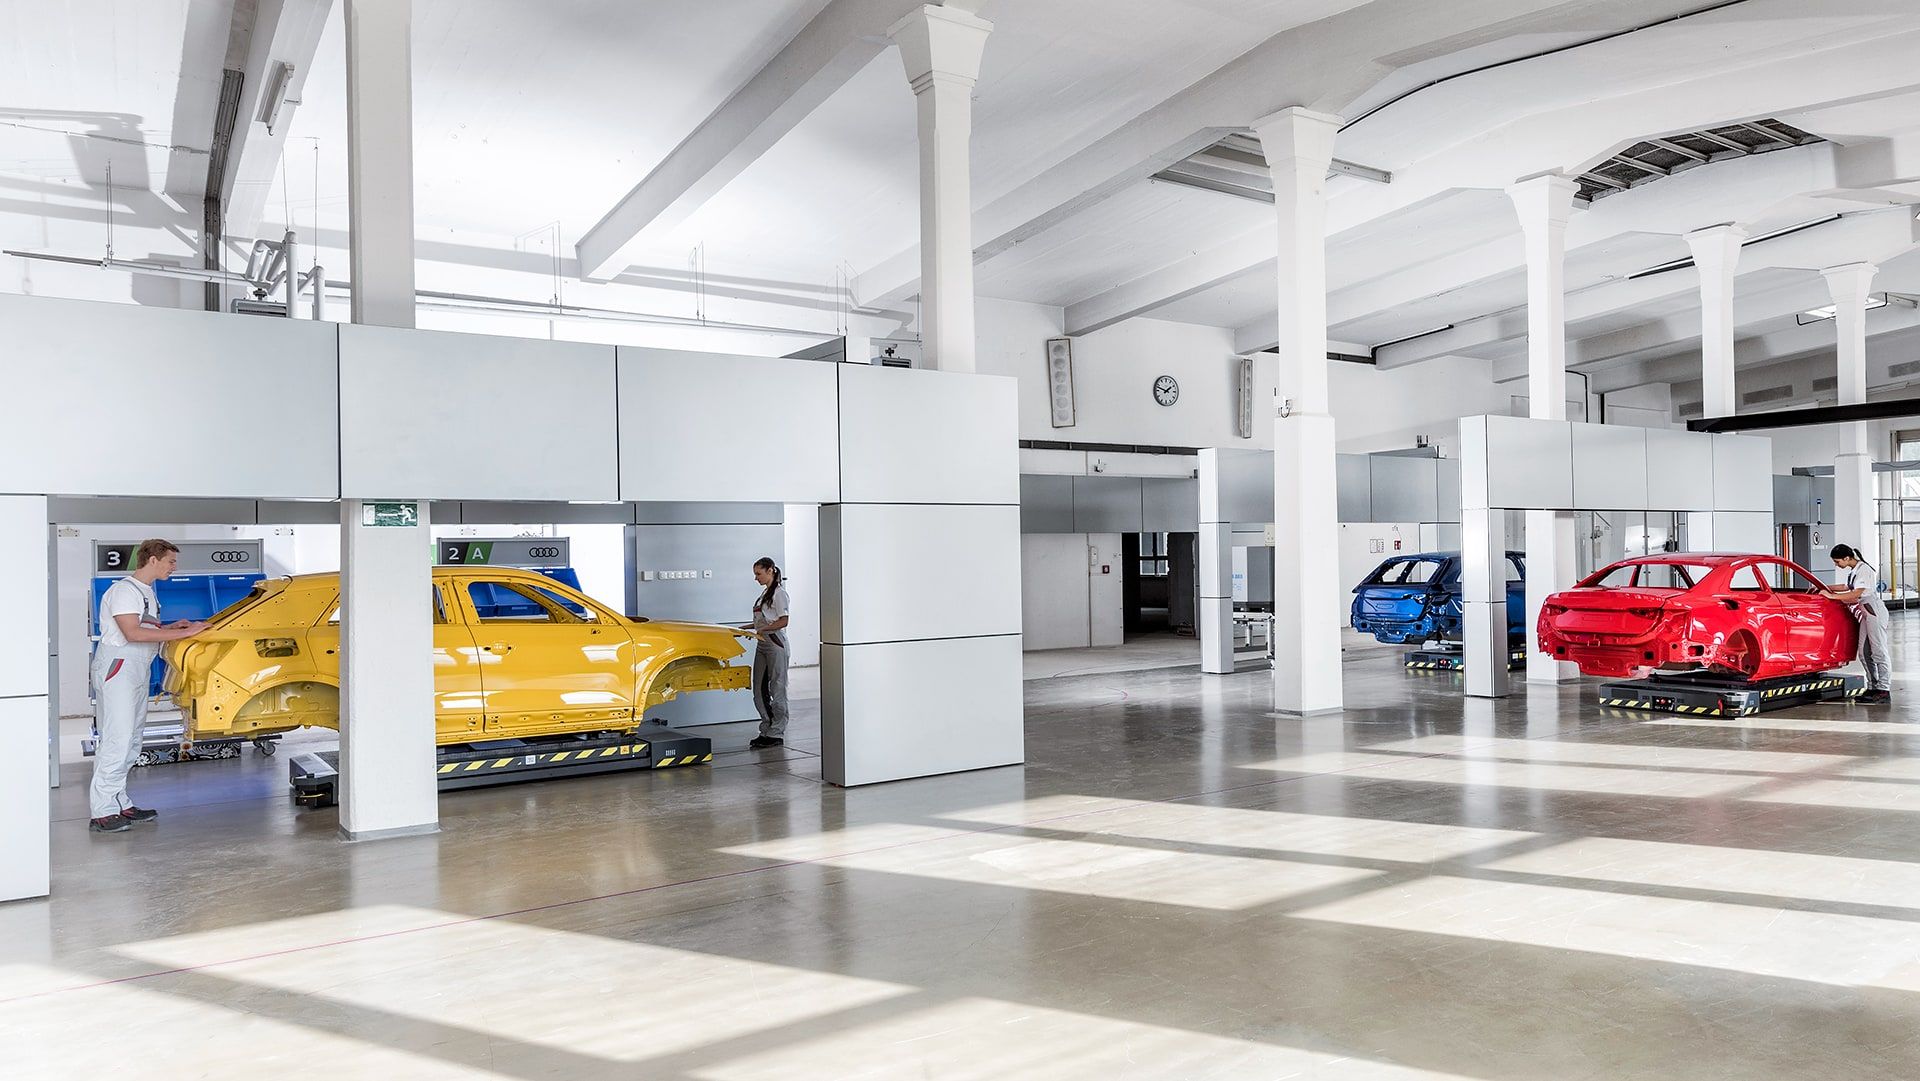 Das Bild zeigt eine moderne Produktionshalle mit Audi Karosserien auf fahrerlosen Transportsystemen.